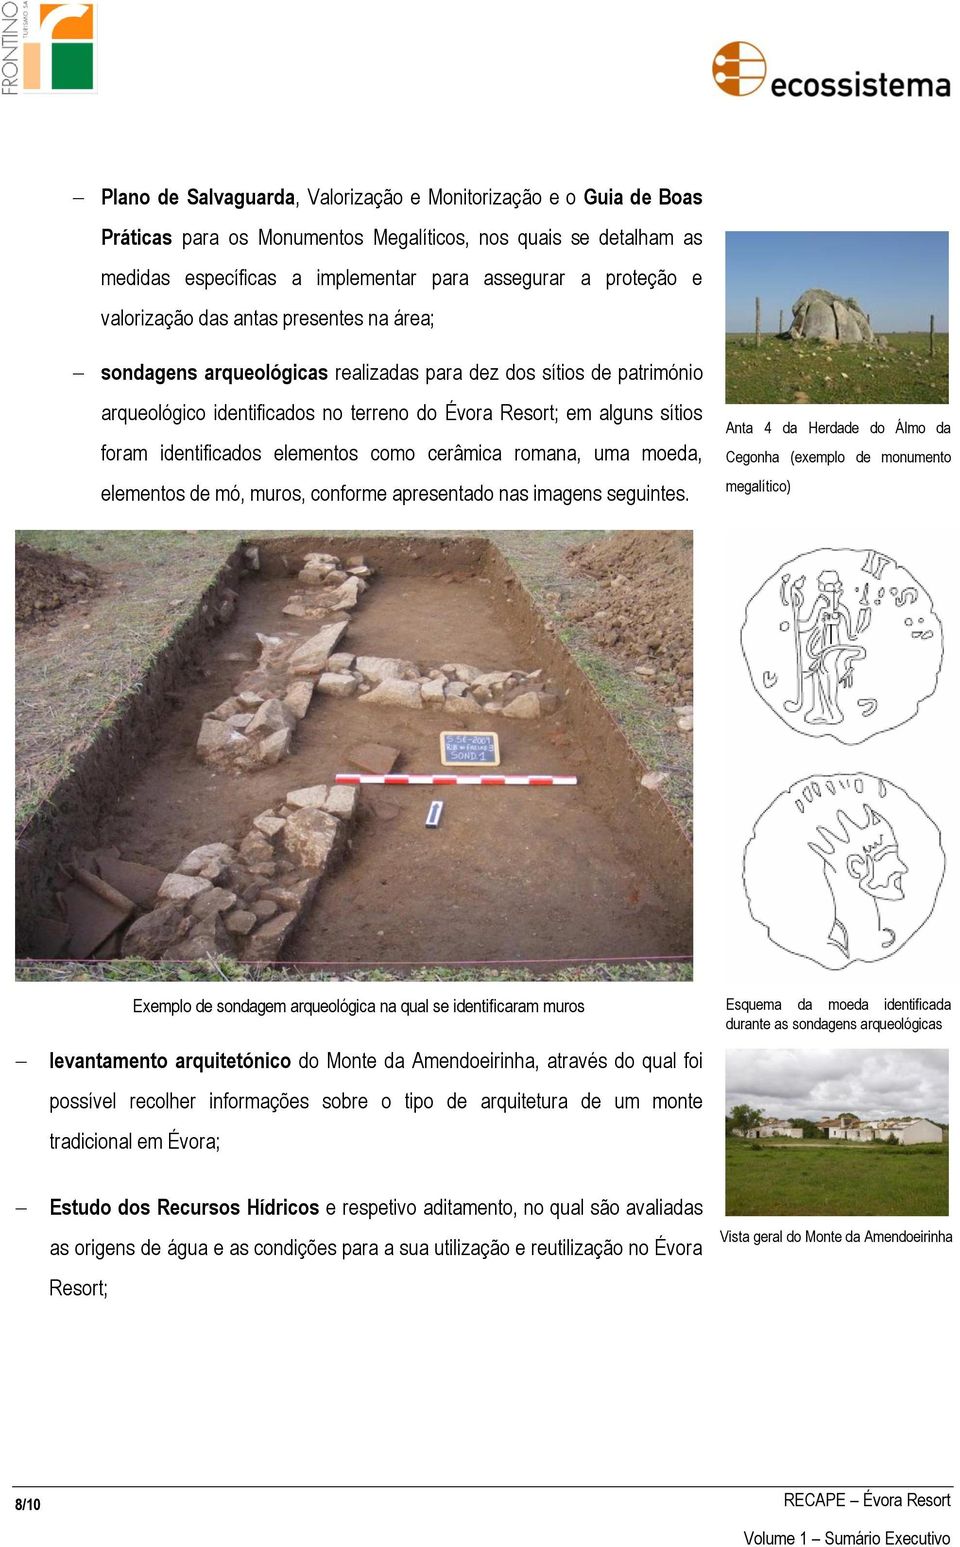 identificados elementos como cerâmica romana, uma moeda, elementos de mó, muros, conforme apresentado nas imagens seguintes.